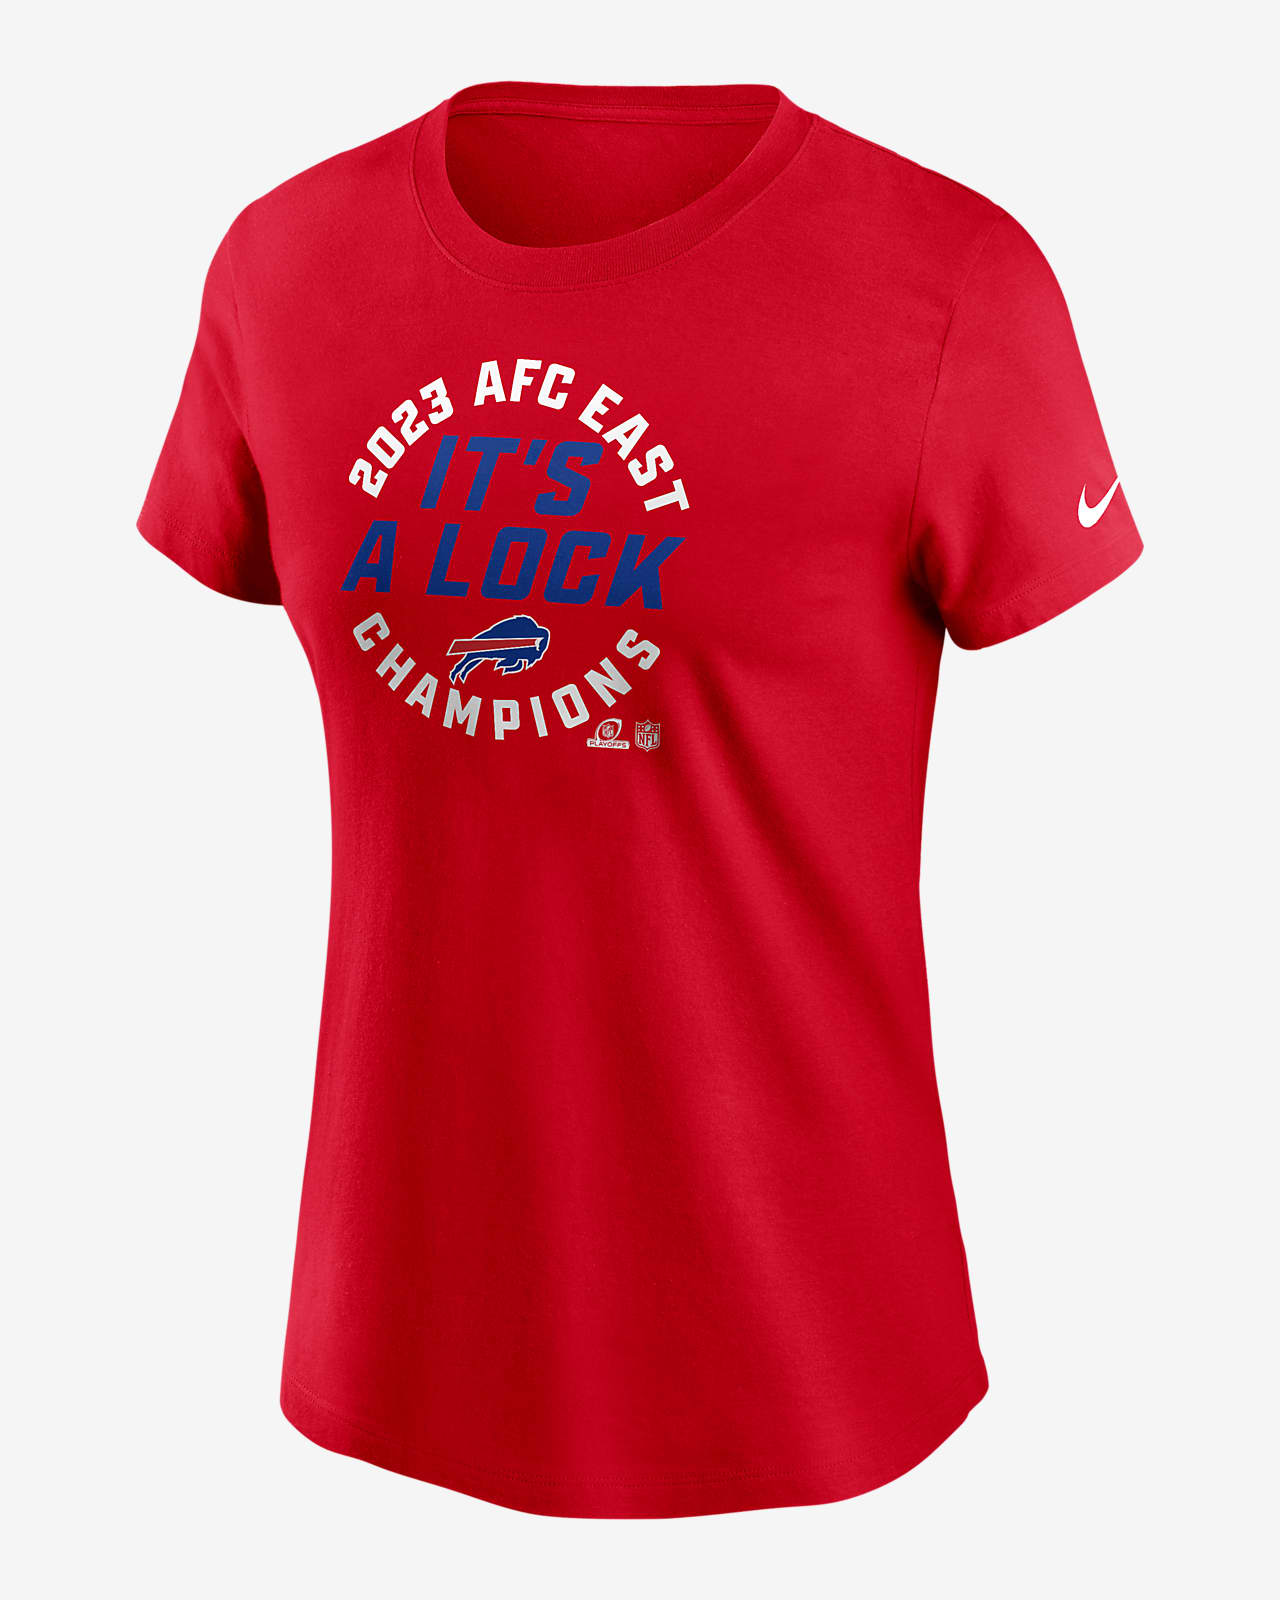 Buffalo Bills : Tops & Shirts for Women : Target